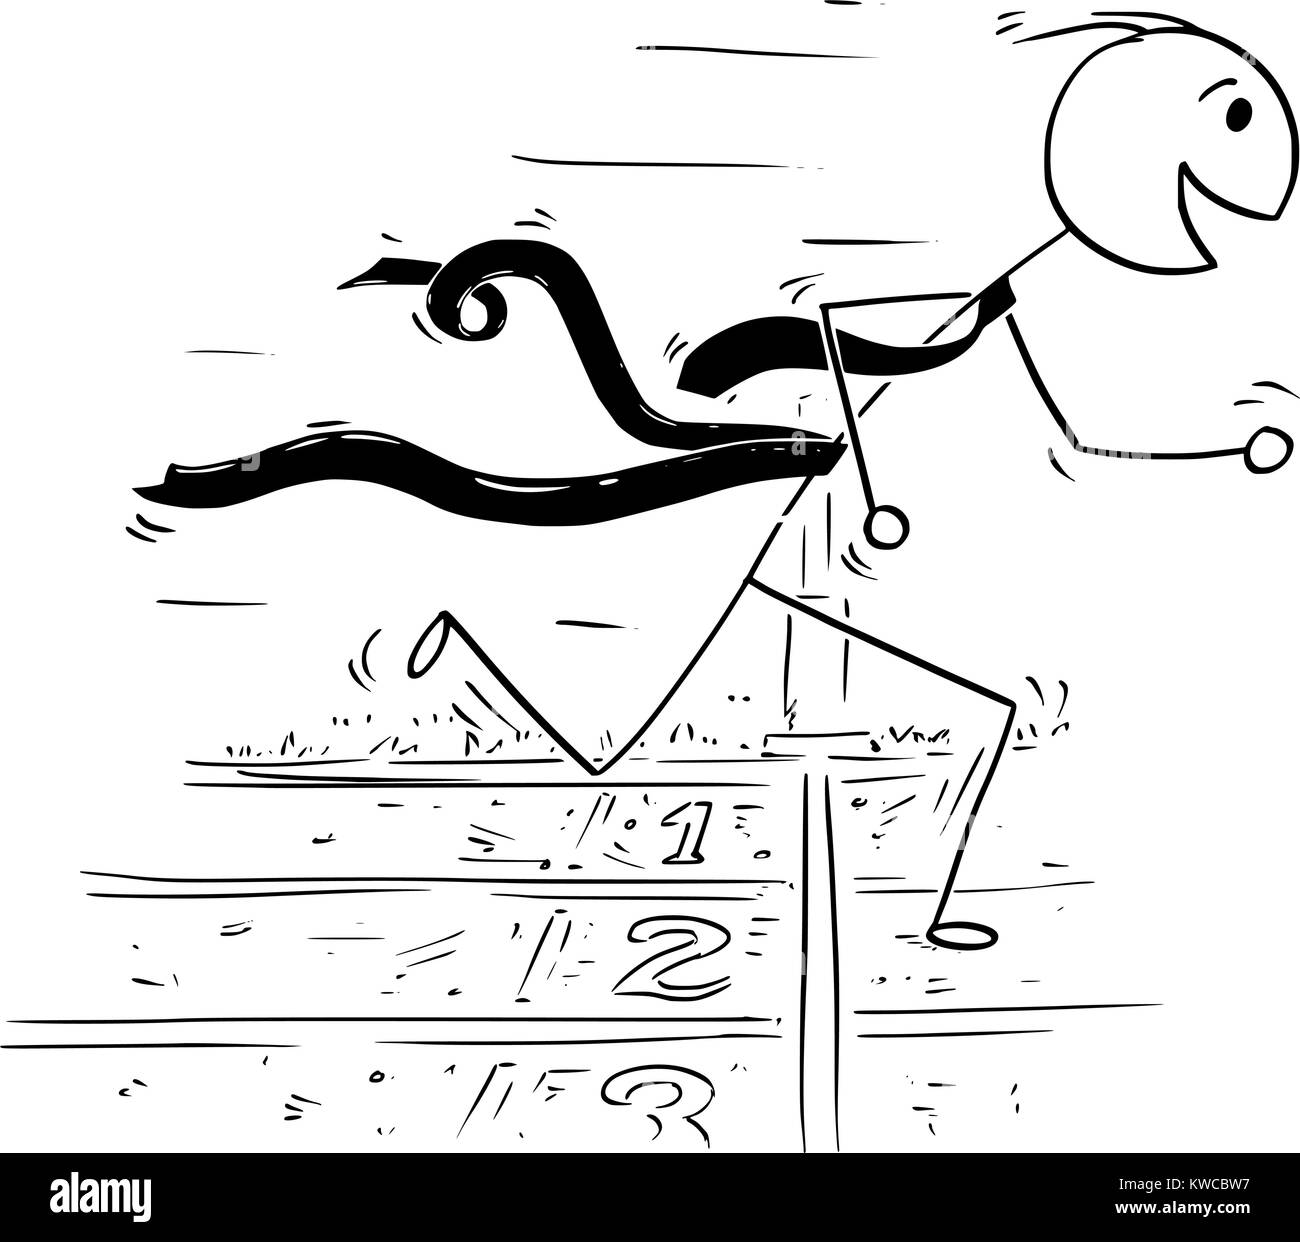 Cartoon stick Mann Zeichnung konzeptionelle Darstellung der Geschäftsmann an der Ziellinie laufen und gewann das Rennen. Konzept der Business Erfolg gegen Kom Stock Vektor